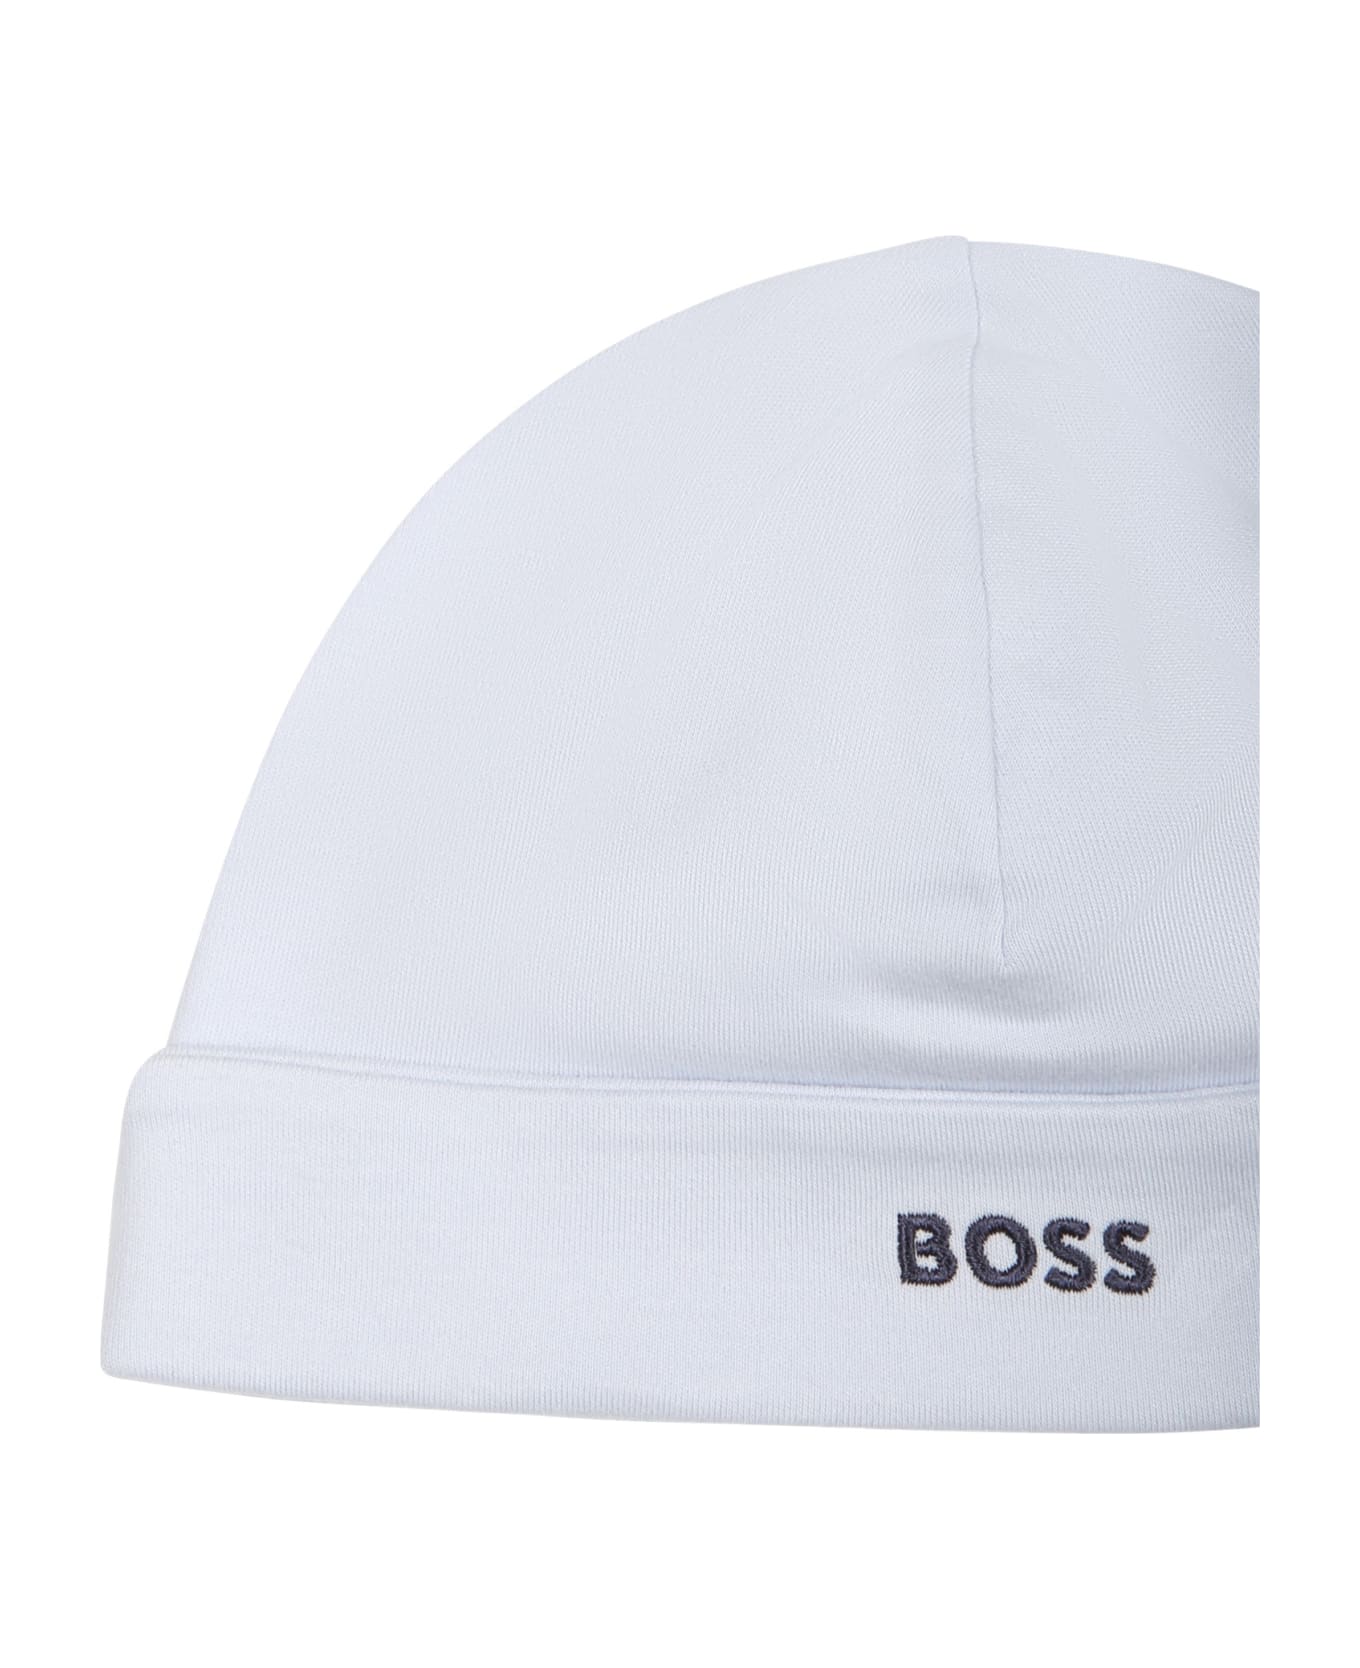 Hugo Boss Light Blue Hat For Baby Boy With Logo - Light Blue